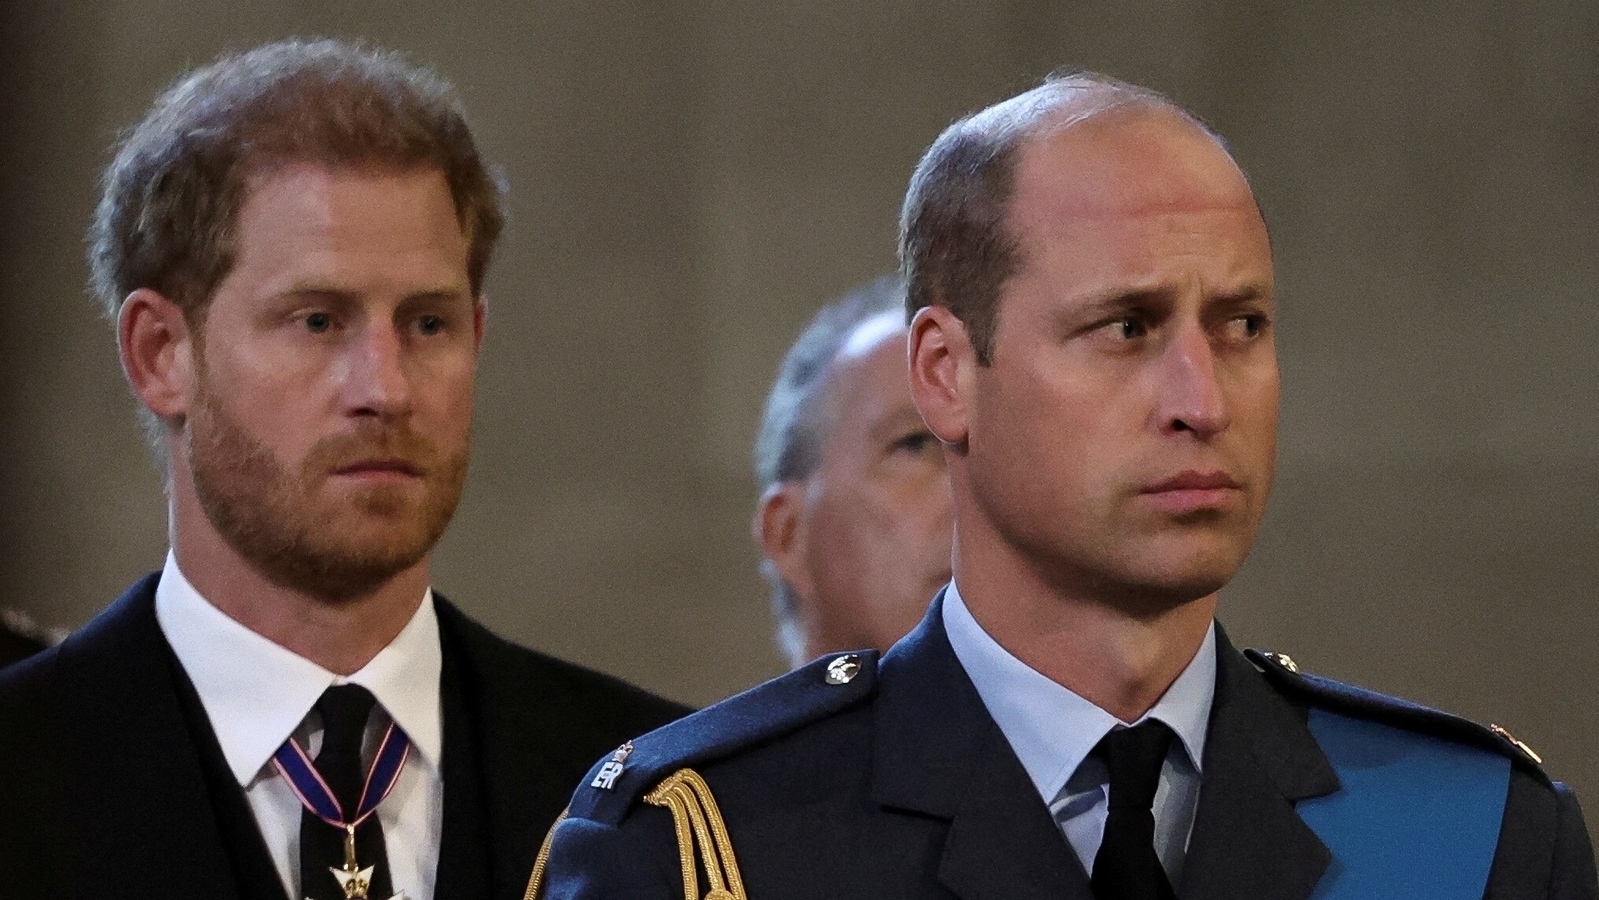 Prinz Harry behauptet, William habe ihm gesagt, er solle Meghan keinen Heiratsantrag machen, weil sie … |  Weltnachrichten